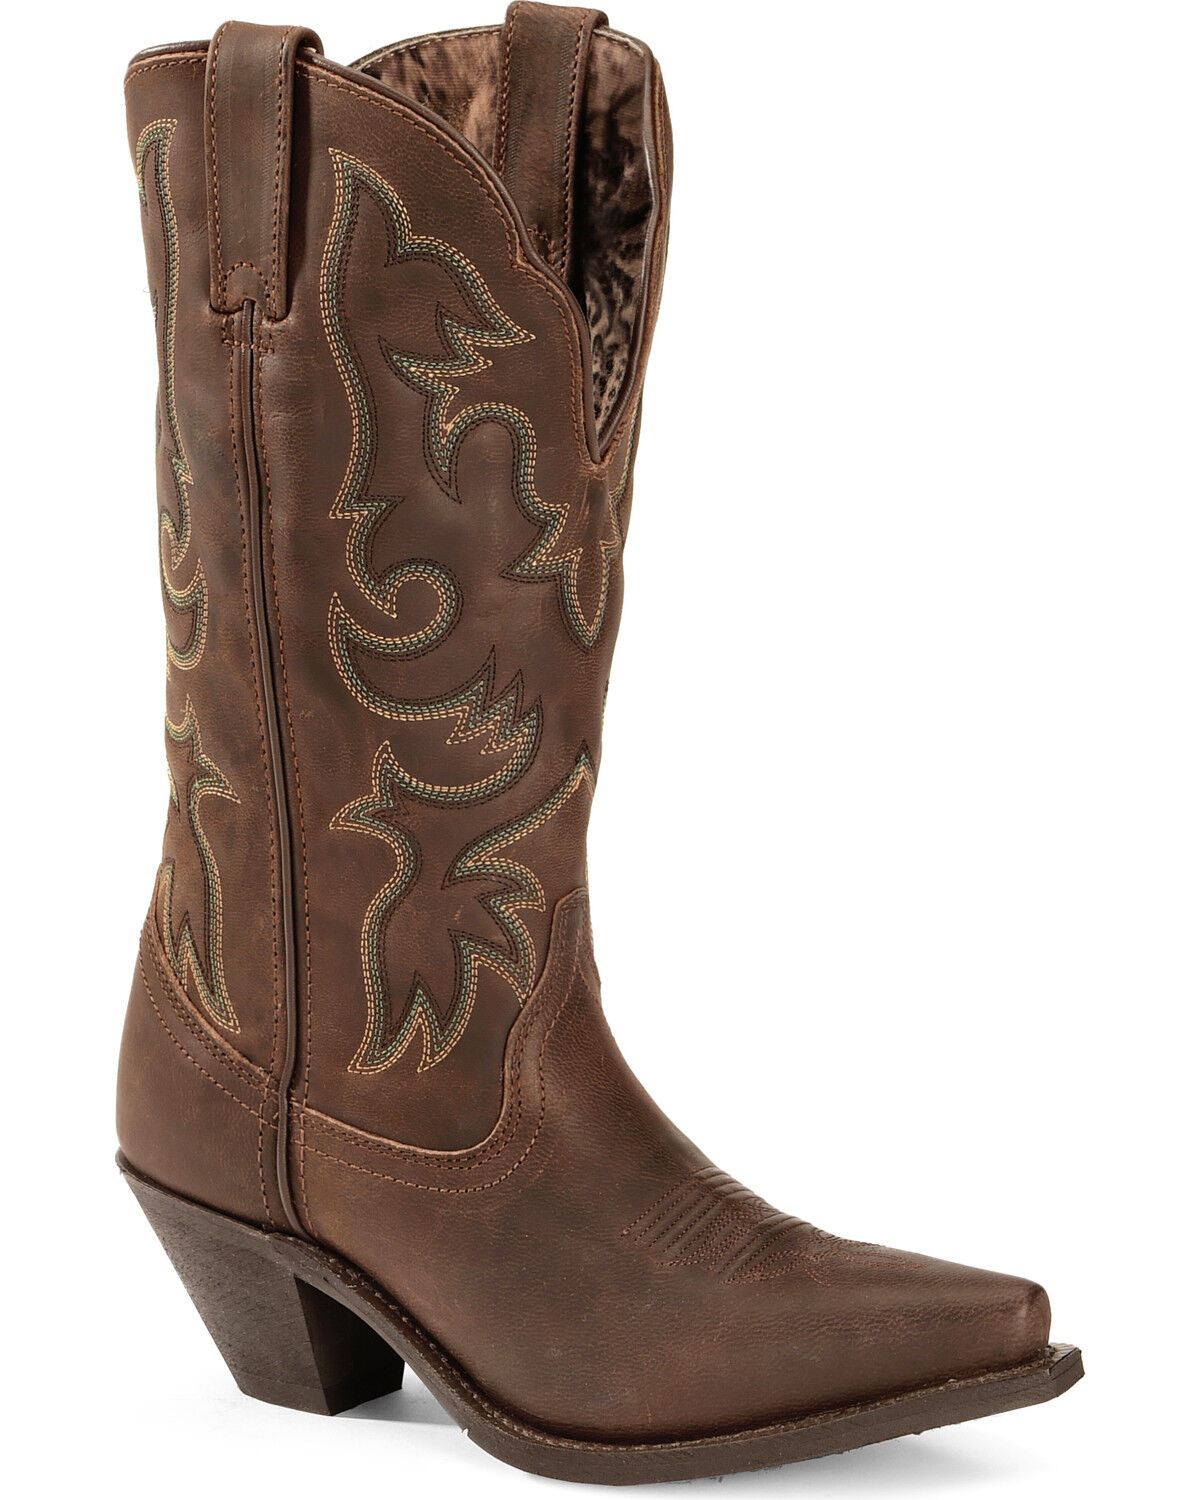 calf cowboy boots